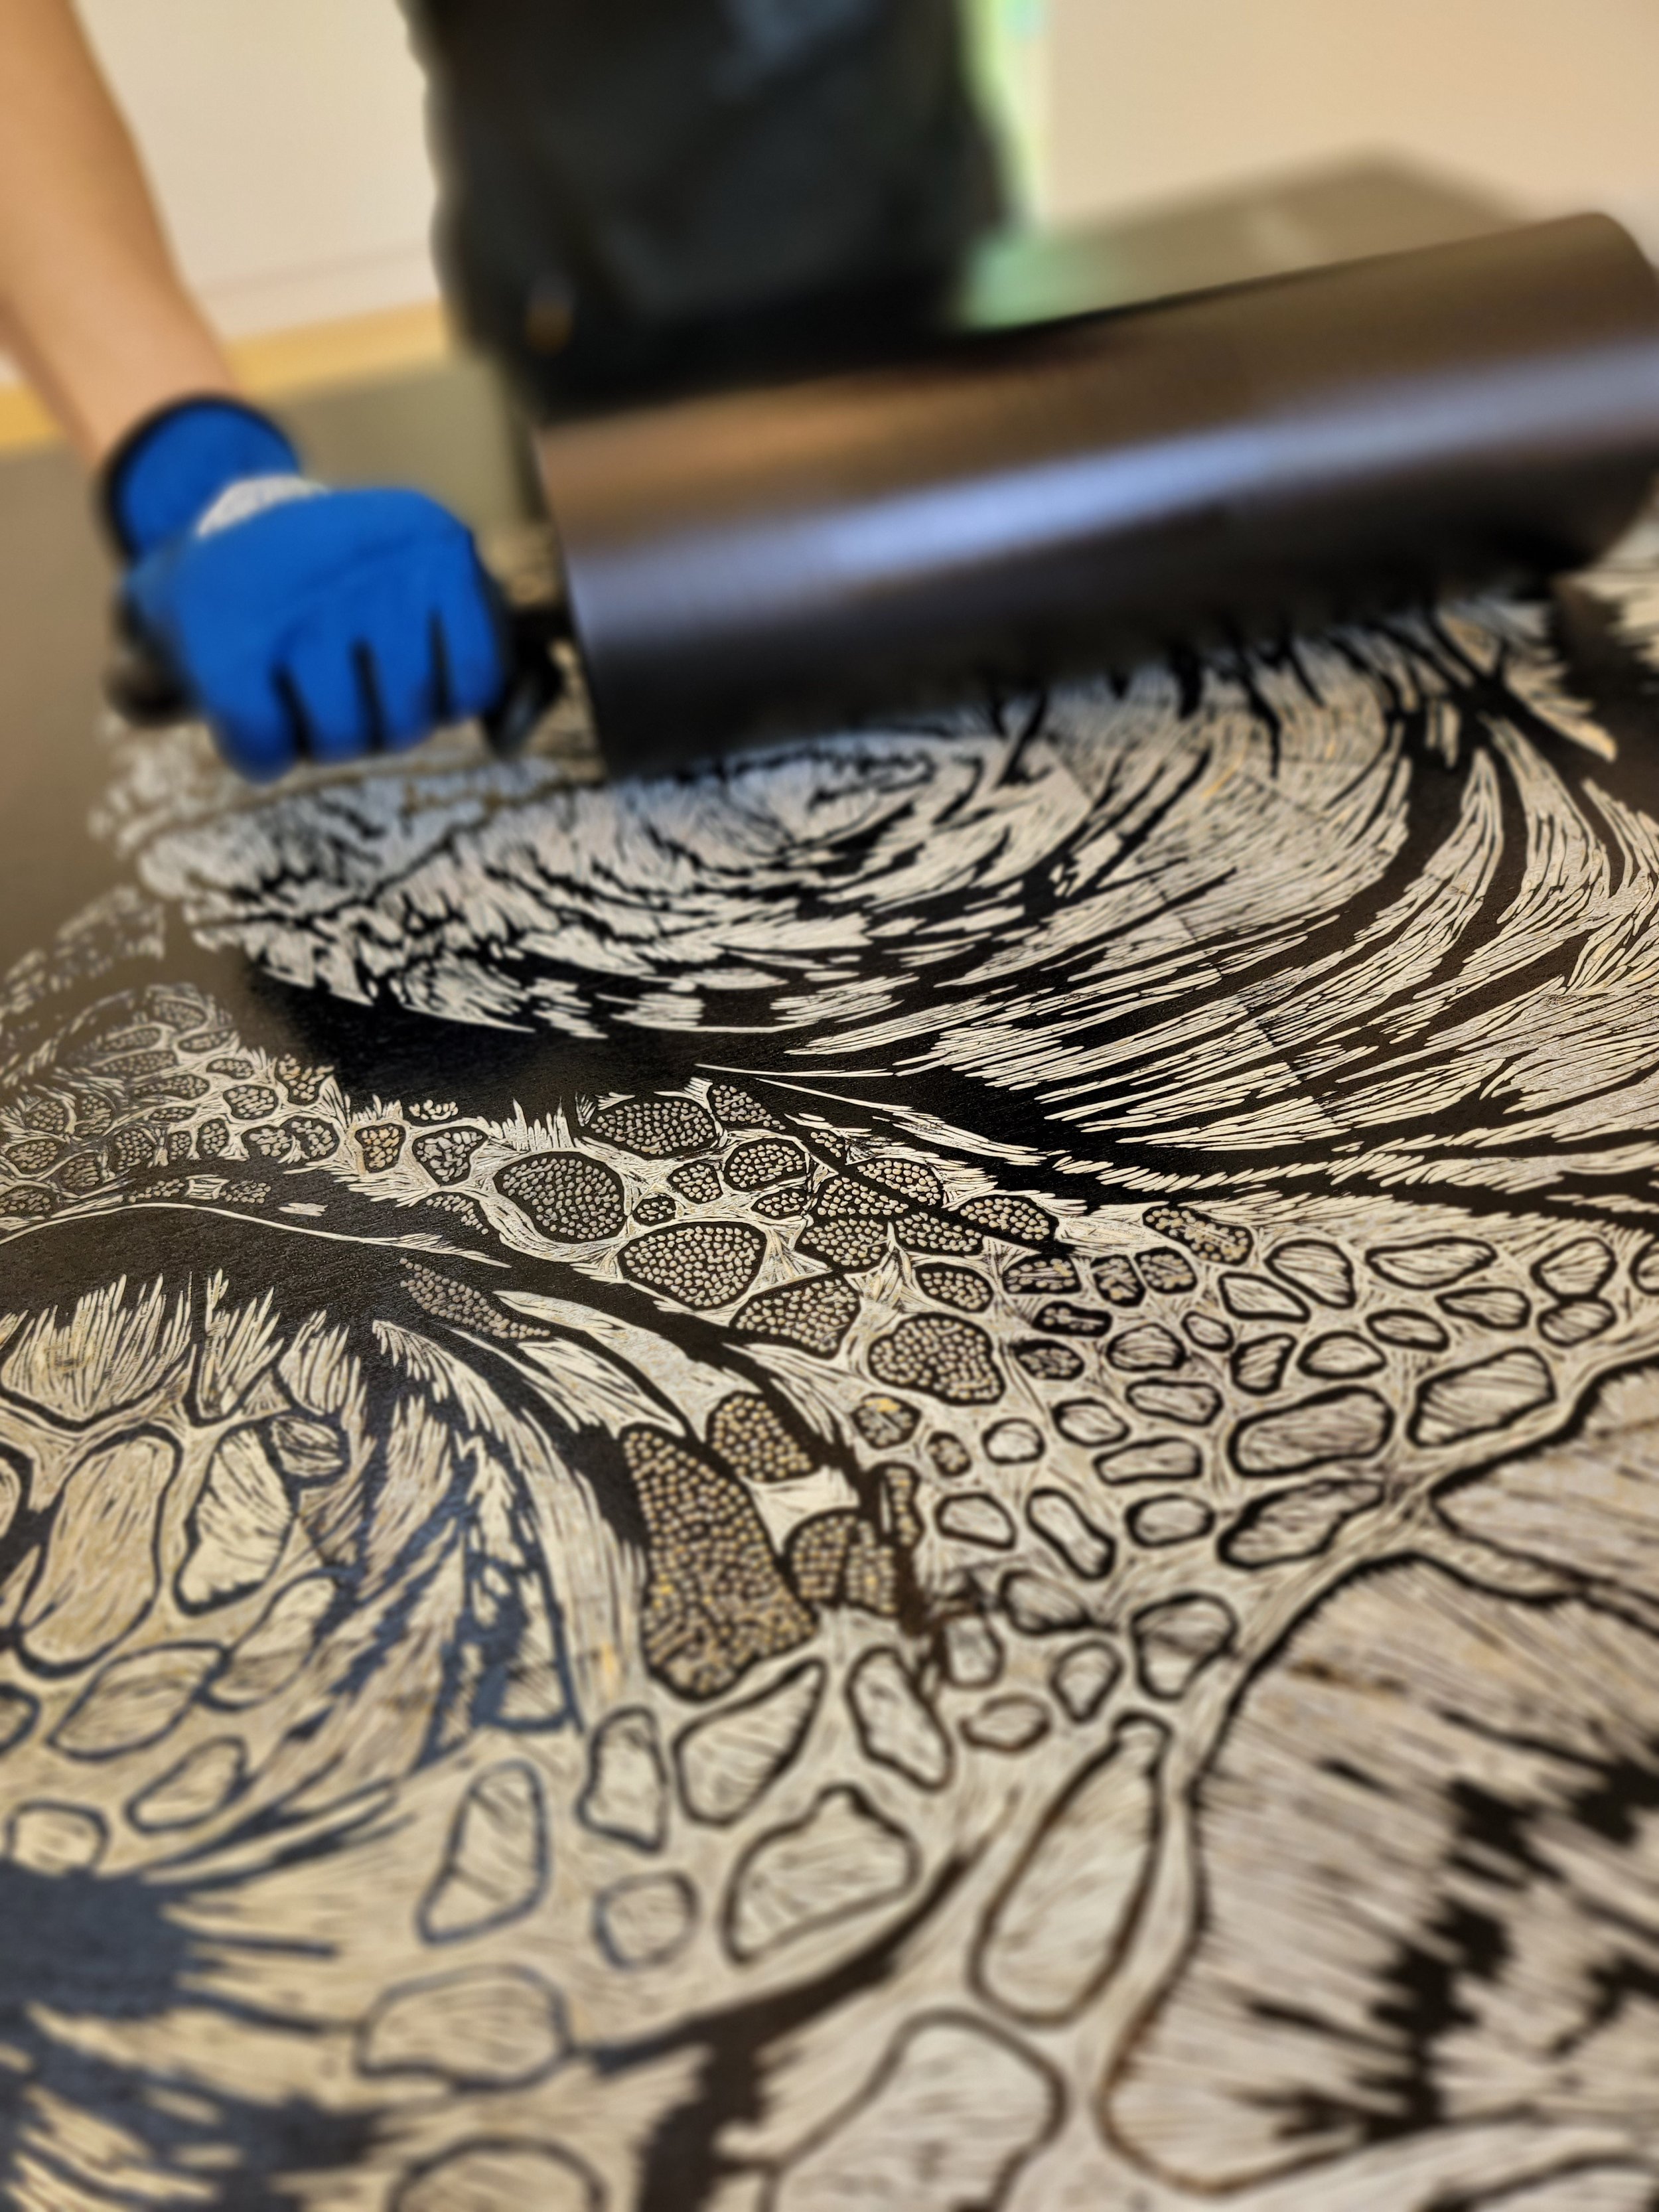 BIG INK Inking a Woodblock Carved by Kelsie Becker.jpg